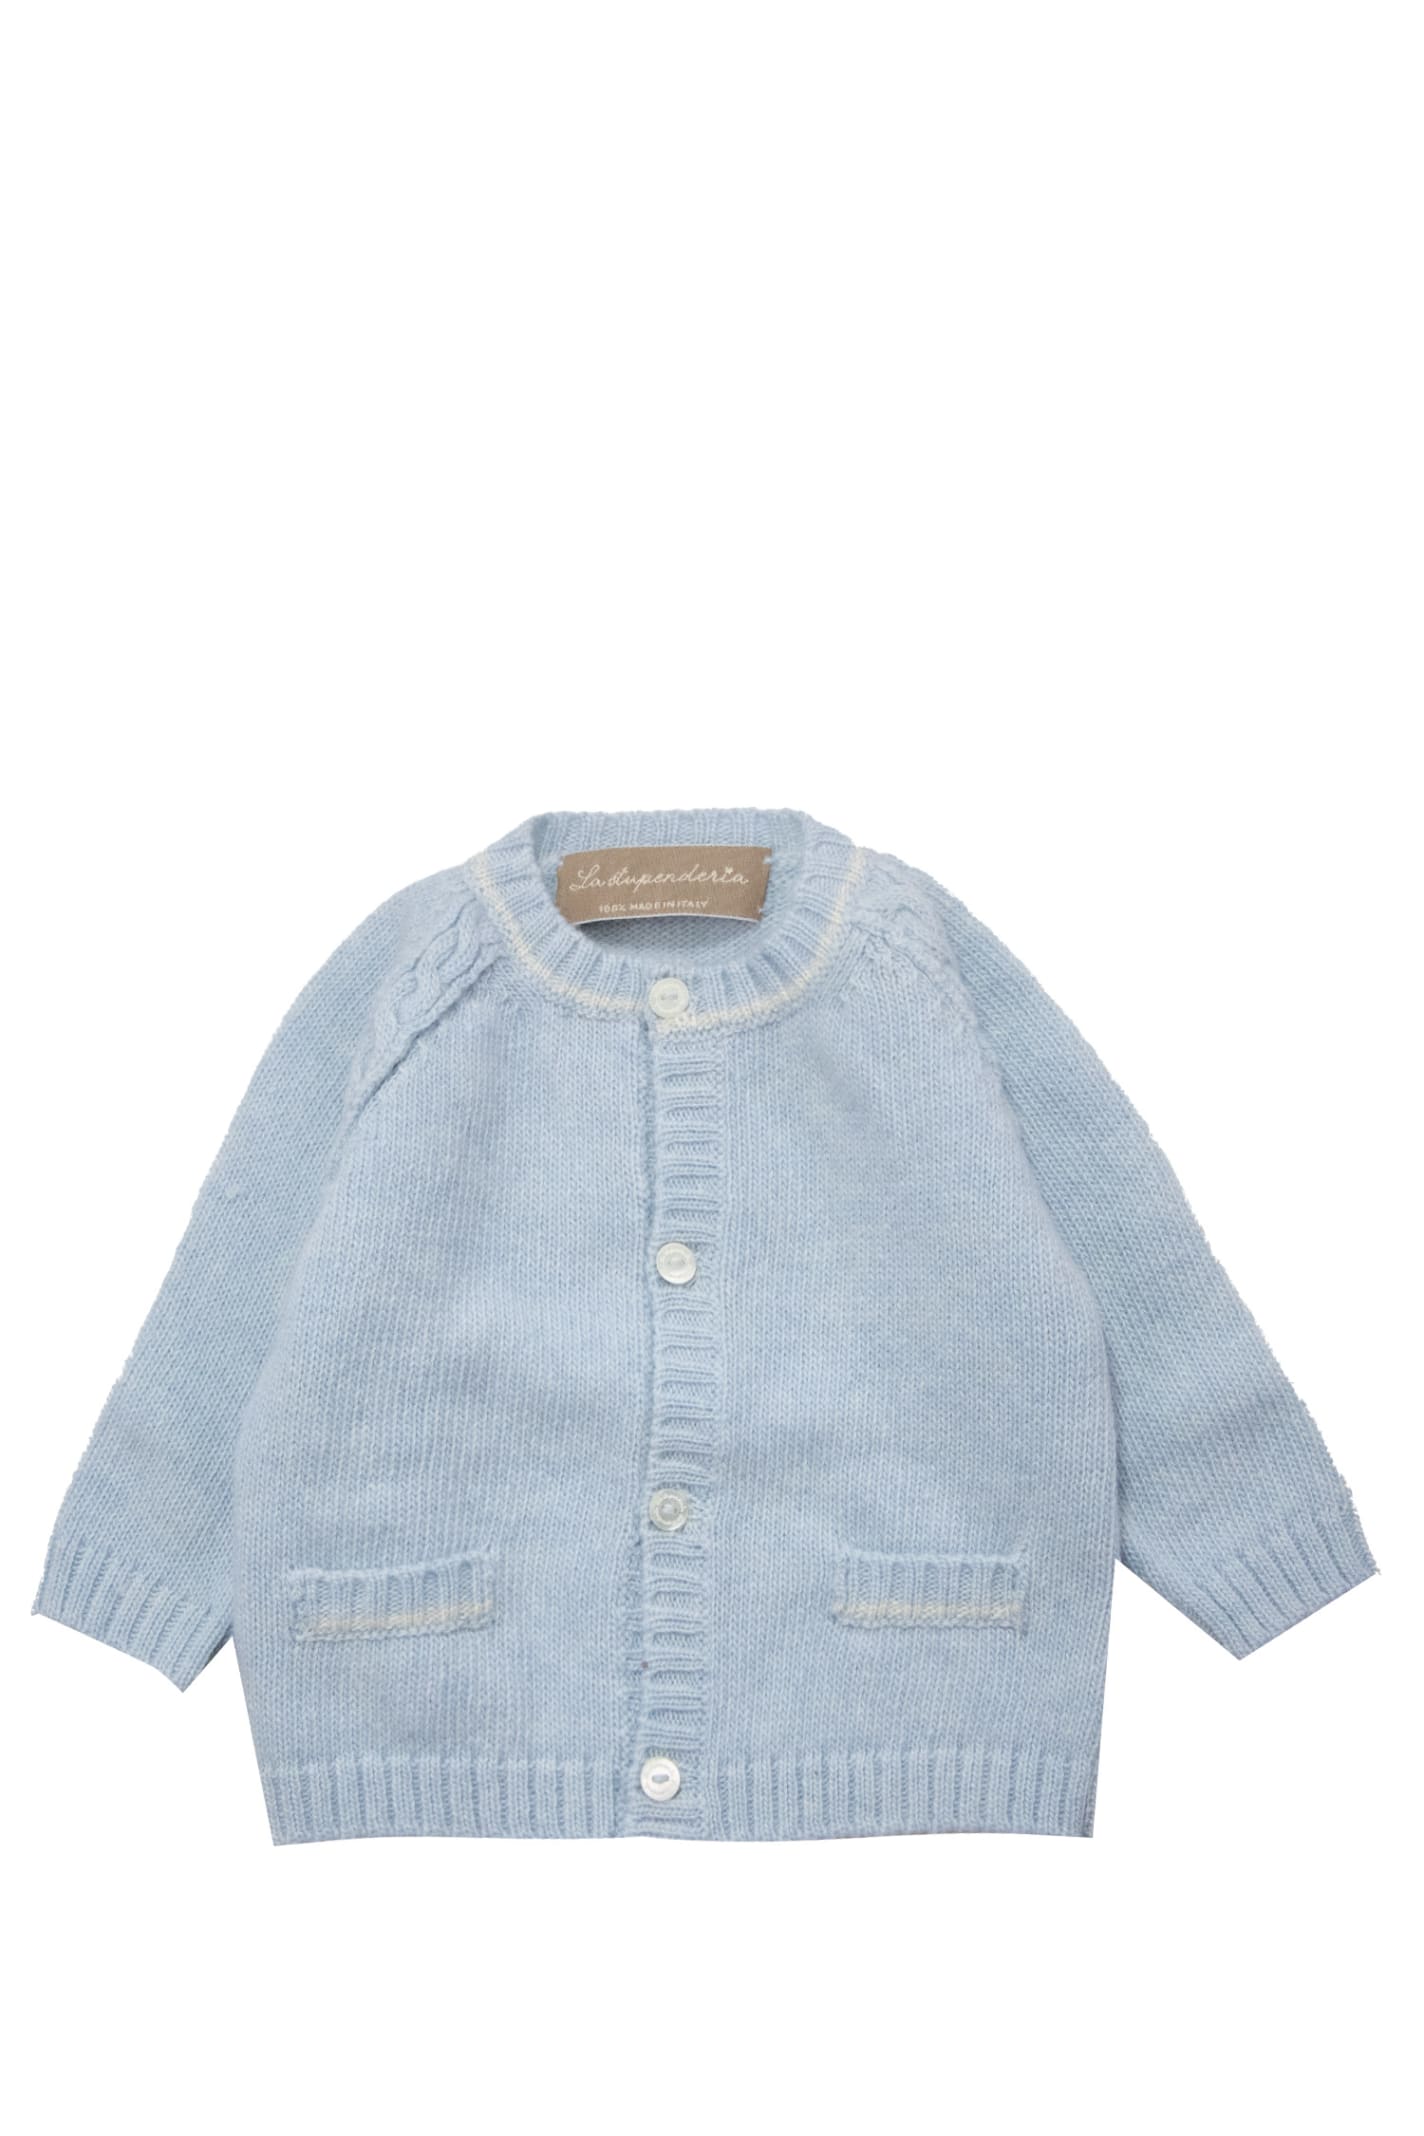 La Stupenderia Babies' Wool Sweater In Light Blue